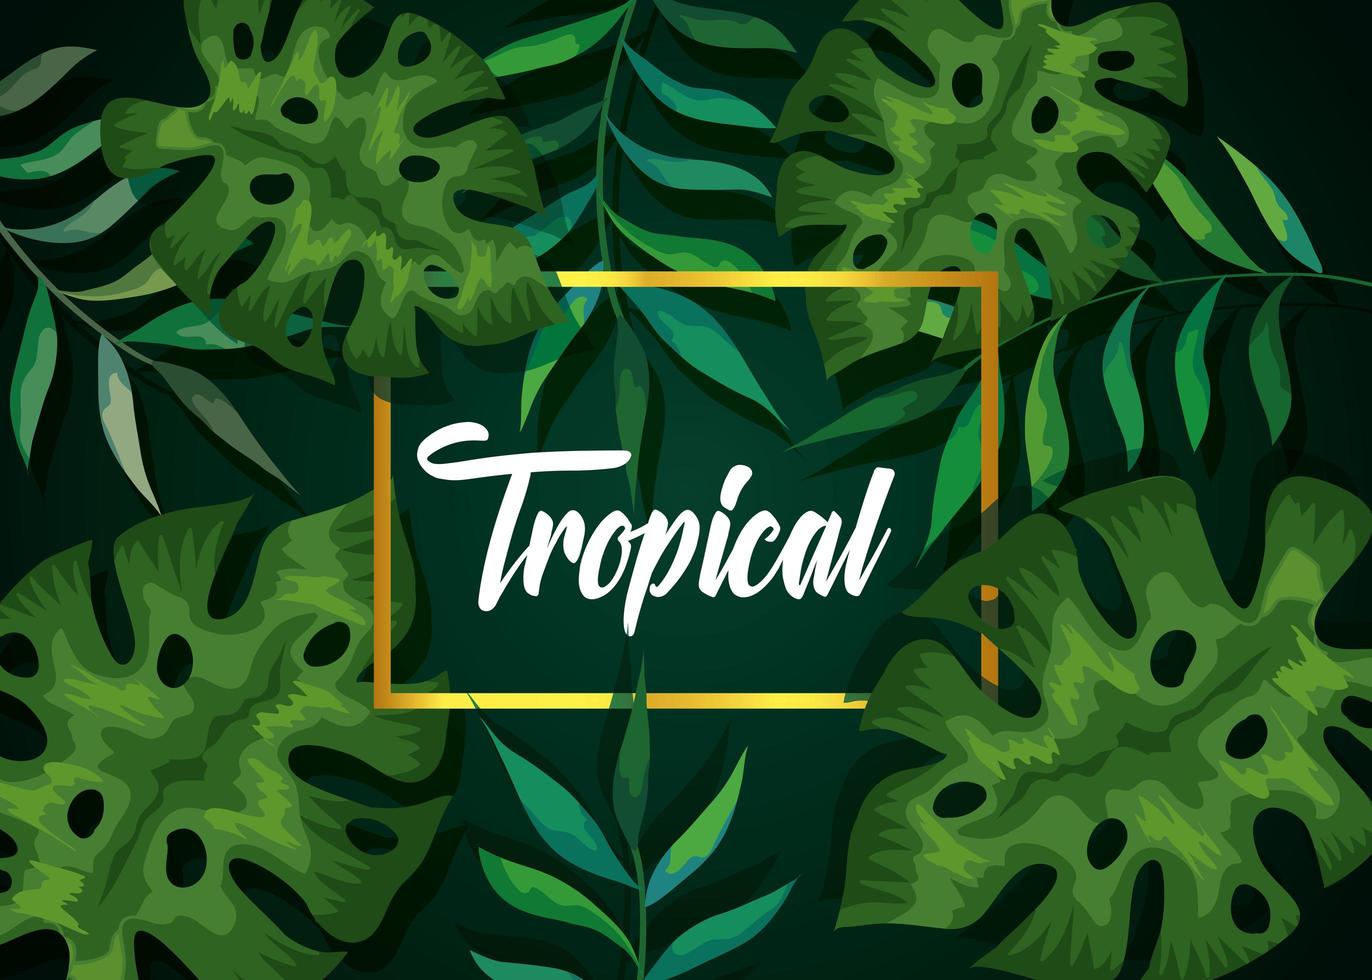 Hintergrund der Blätter tropisch natürlich vektor